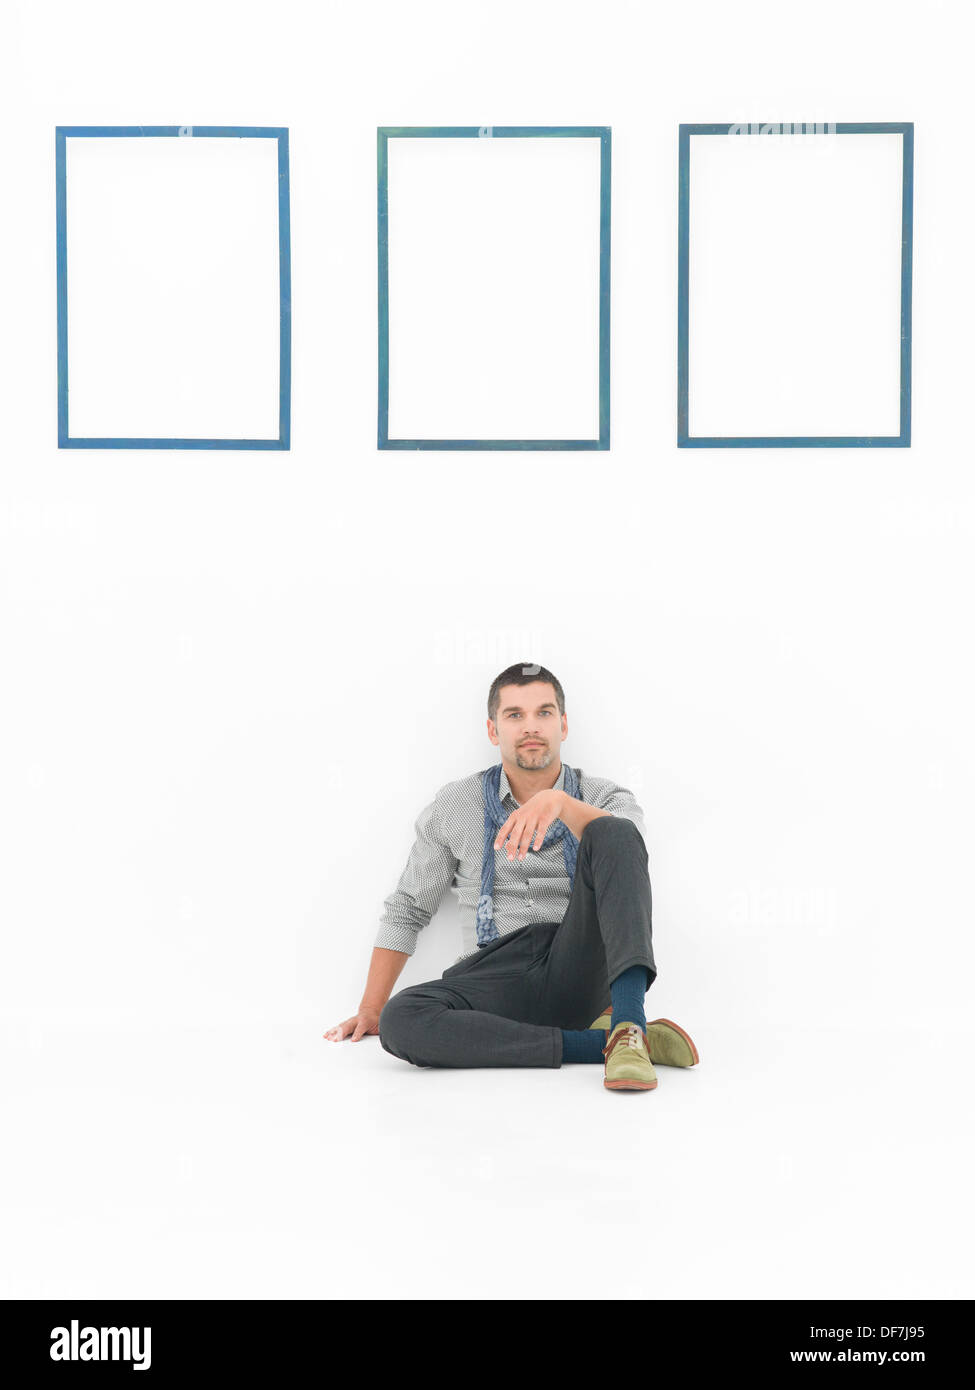 Vue de face de l'homme assis sur le sol dans une posture détendue contre un mur blanc avec trois cadres bleus vides Banque D'Images